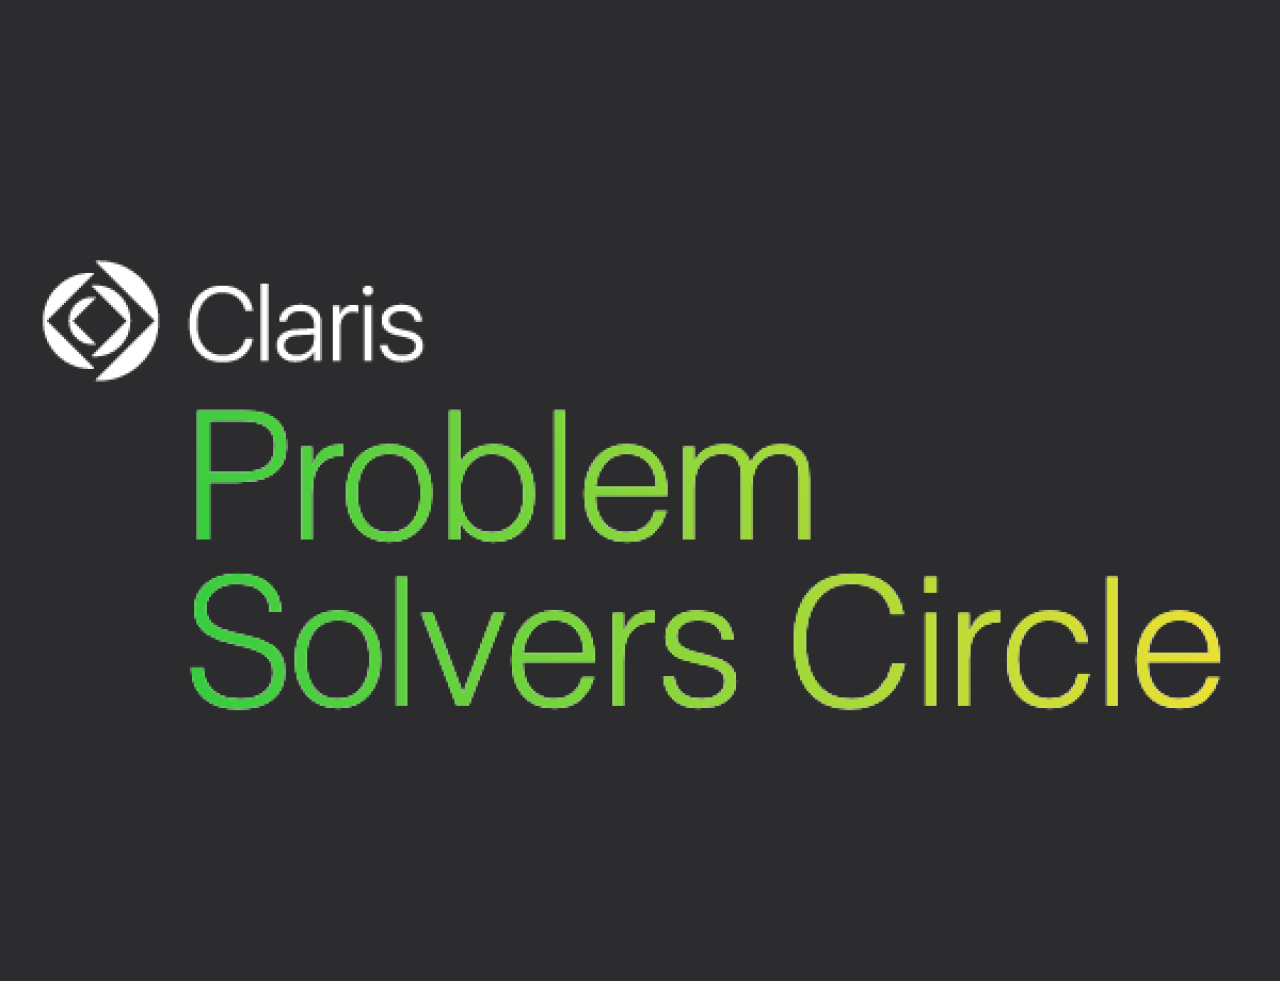 claris problem solvers circle.